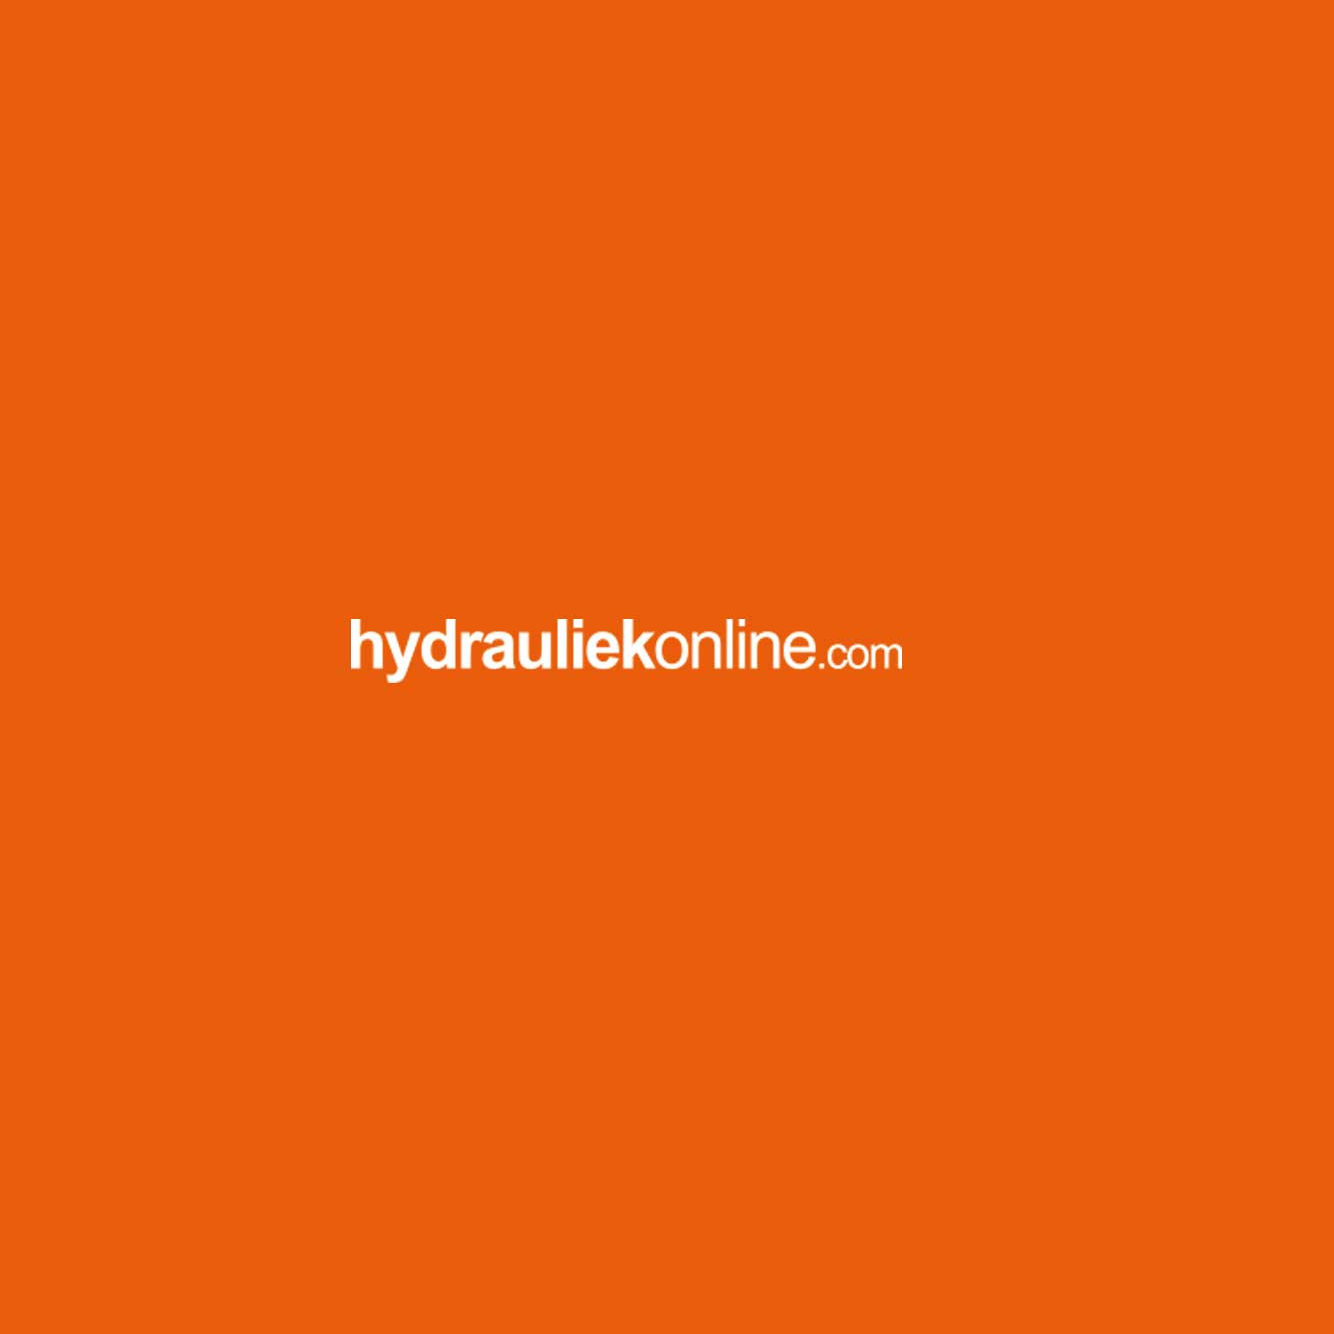 hydrauliek-online-9831.jpg